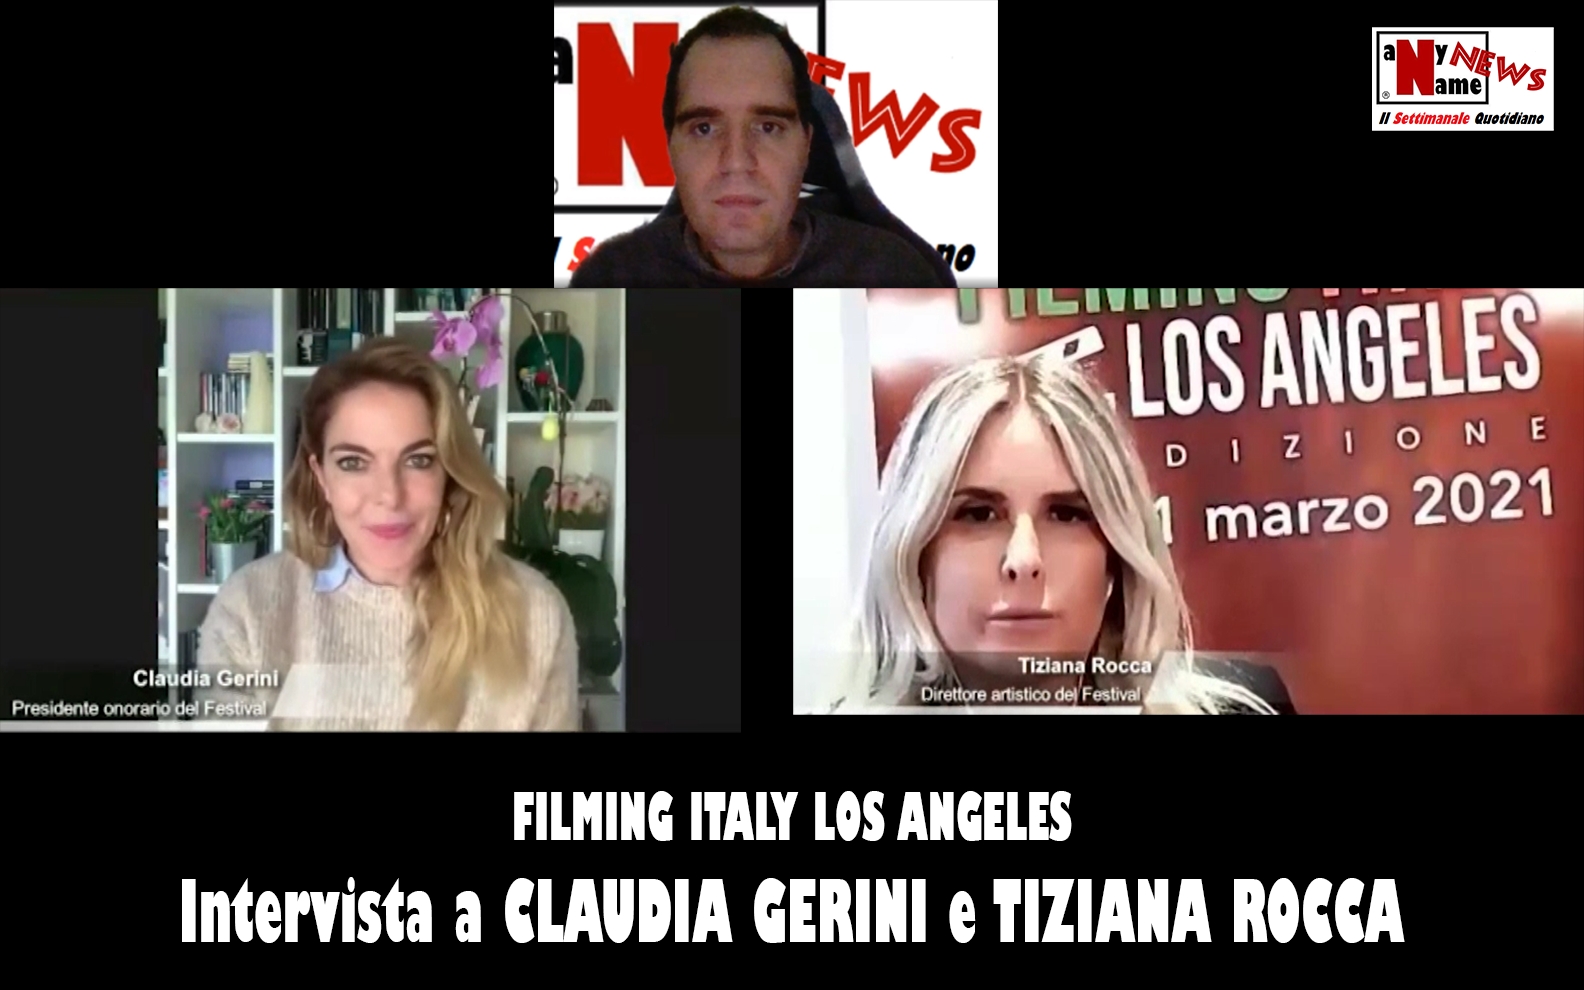 Filming Italy Los Angeles. Intervista a CLAUDIA GERINI e TIZIANA ROCCA